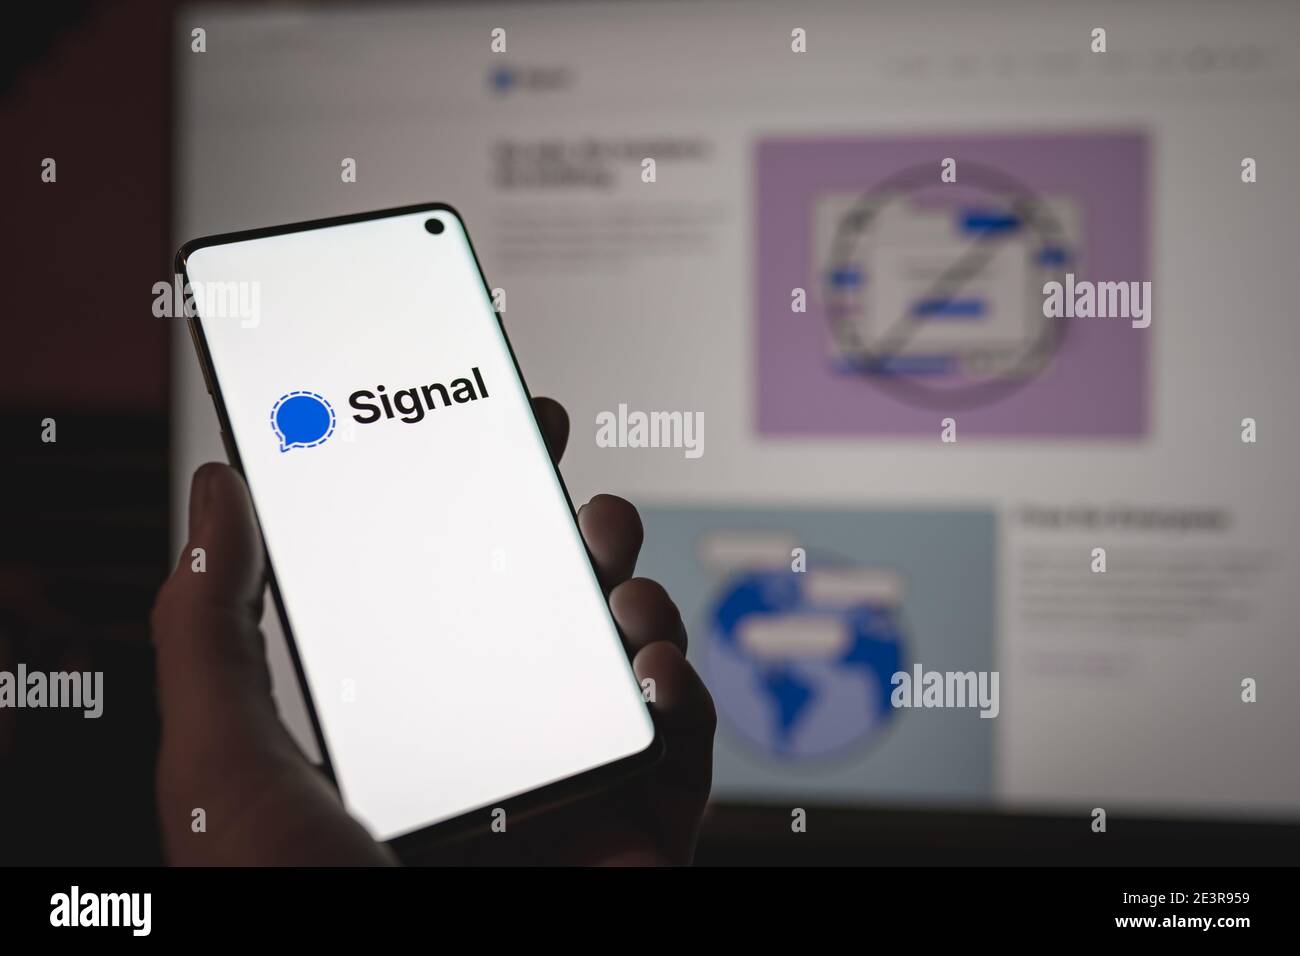 Homme tenant un smartphone avec signe et logo signal wessenger Affiché à l'écran en face de signal web version Banque D'Images